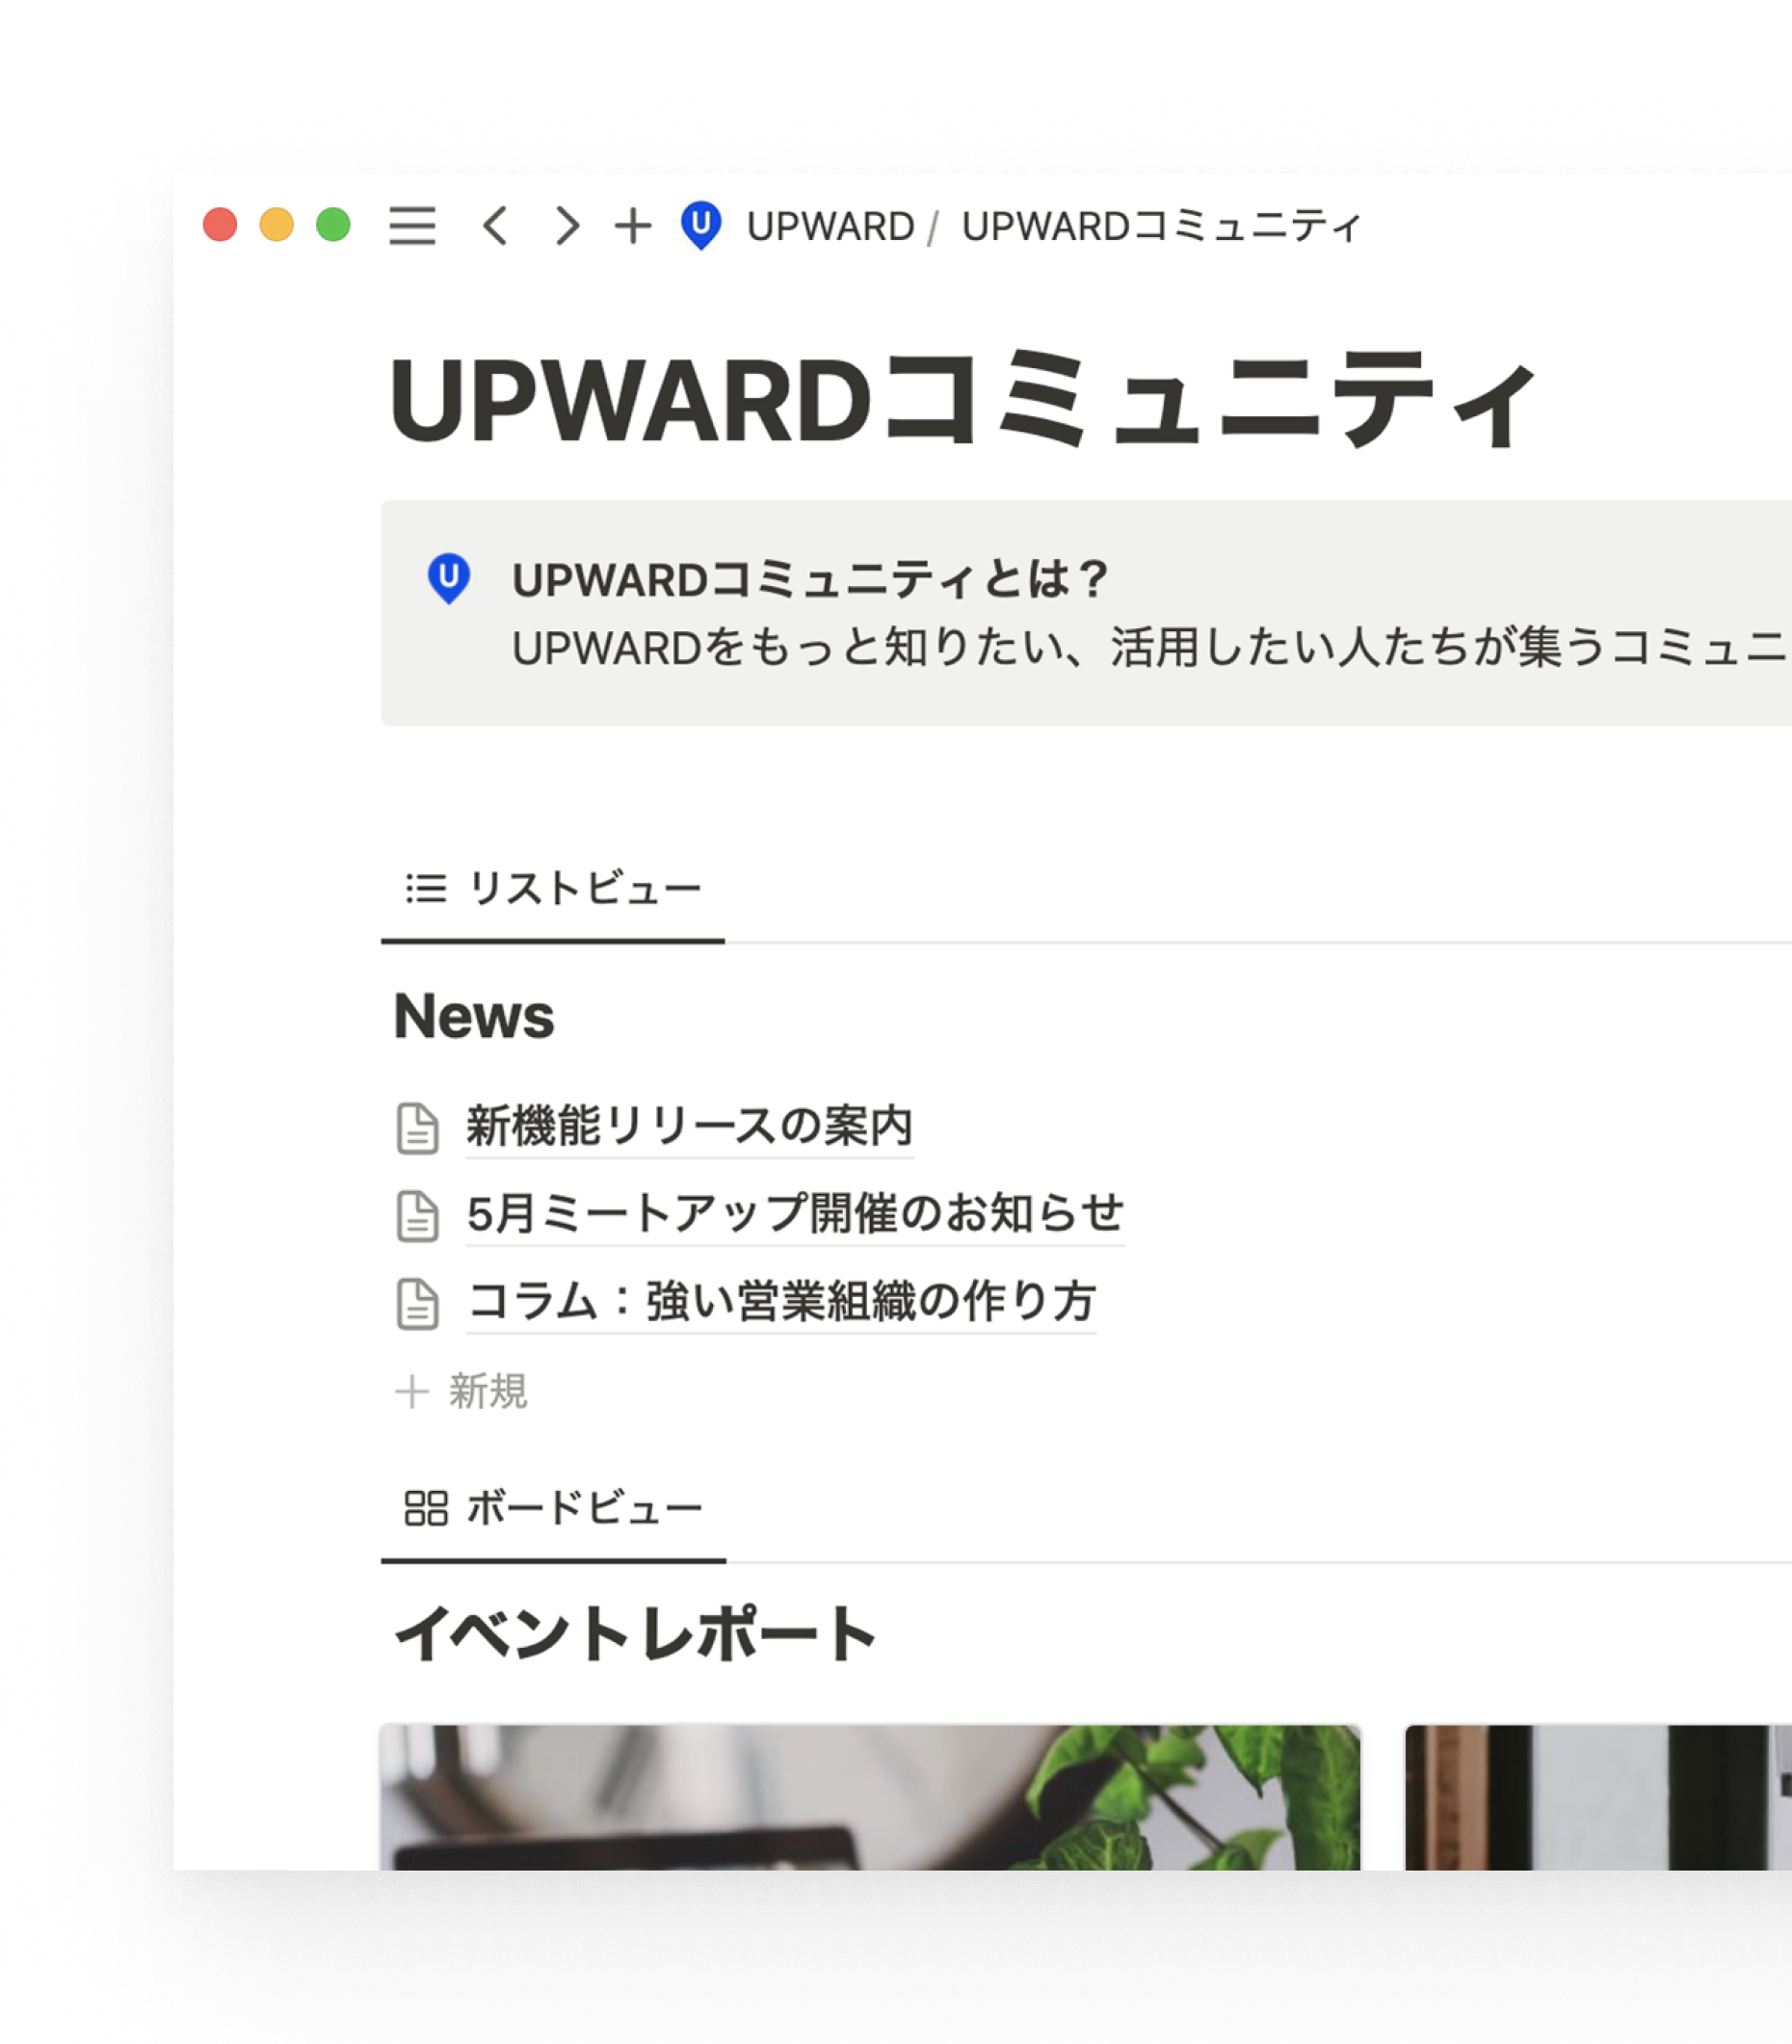 UPWARD Media 4